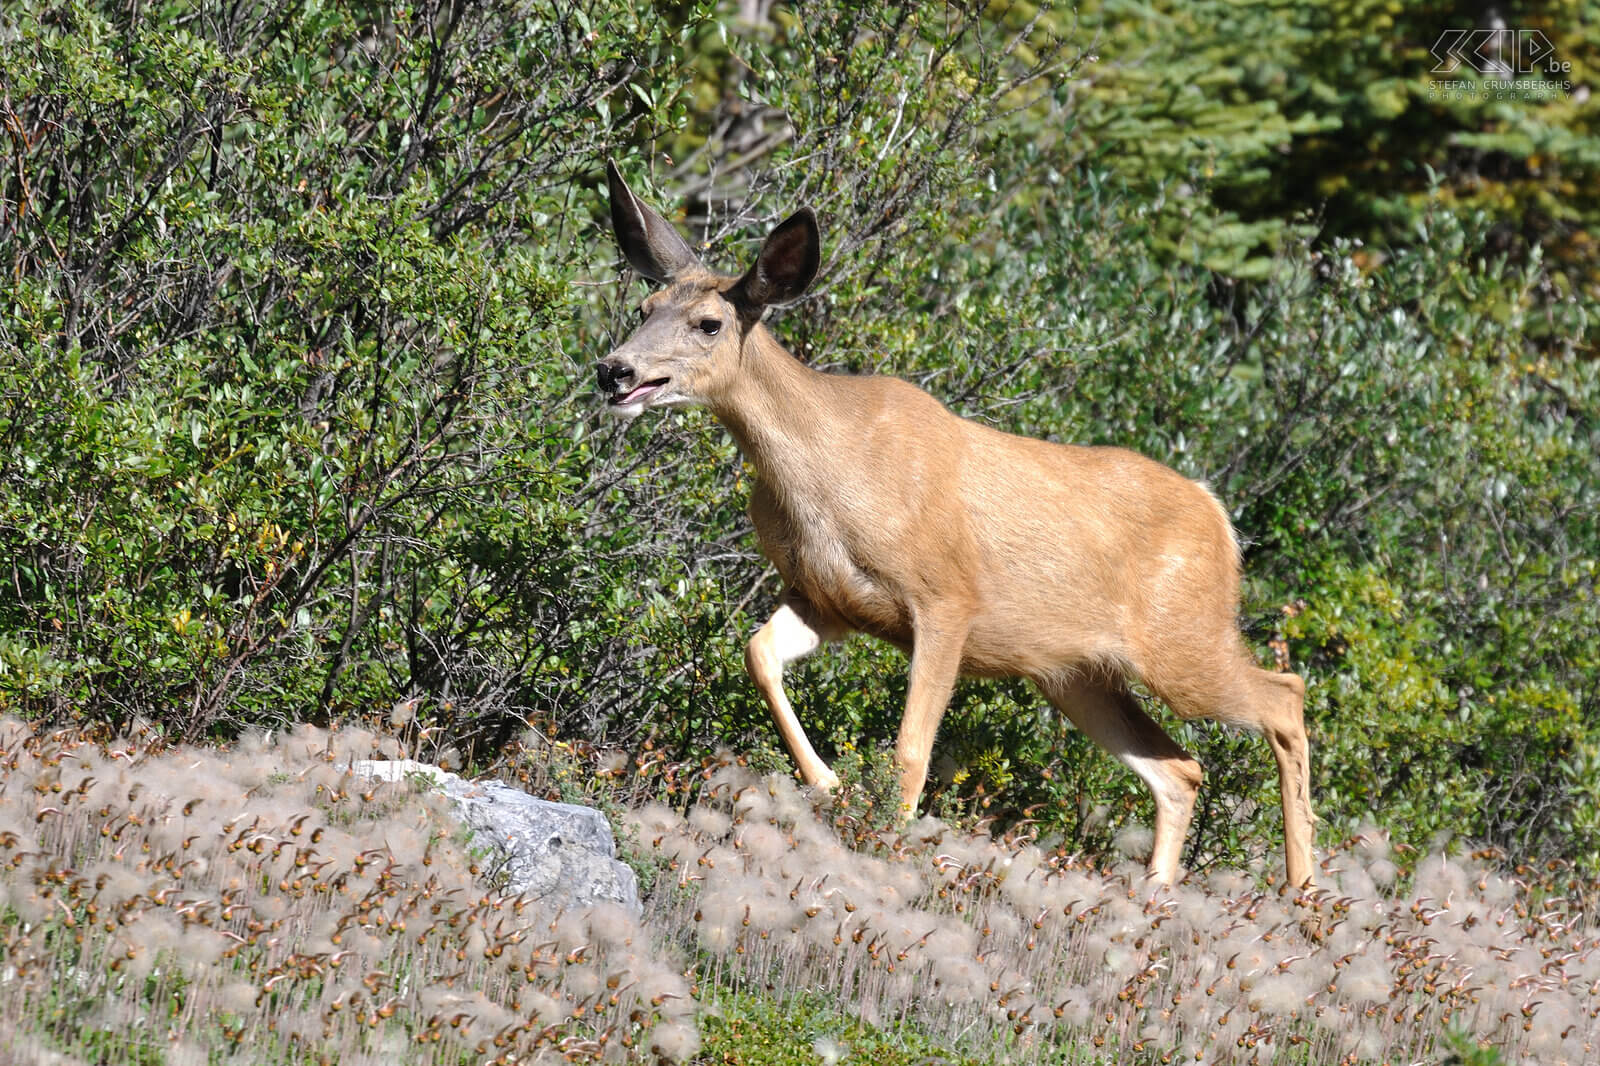 Jasper NP - Mule deer A female mule deer or Columbian black-tailed deer (Odocoileus hemionus columbianus) Stefan Cruysberghs